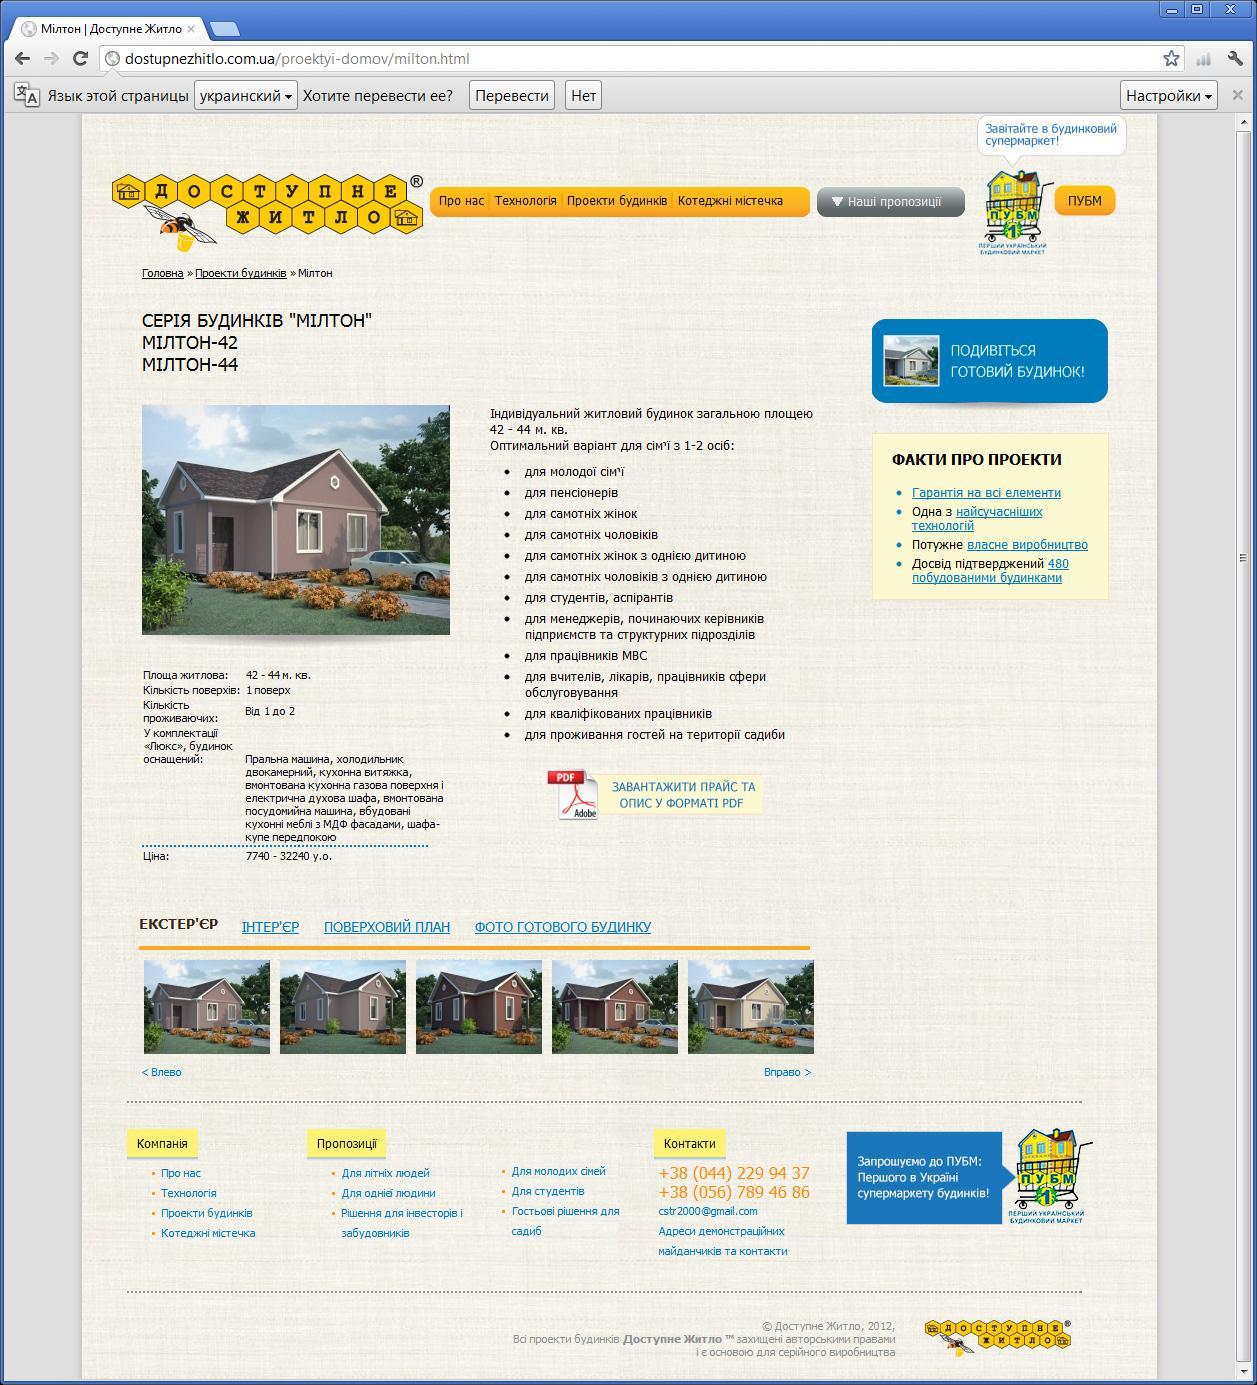 Сайт компанії яка просуває на ринок України технології каркасного будівництва житлових будинків | проекти Evergreen 12